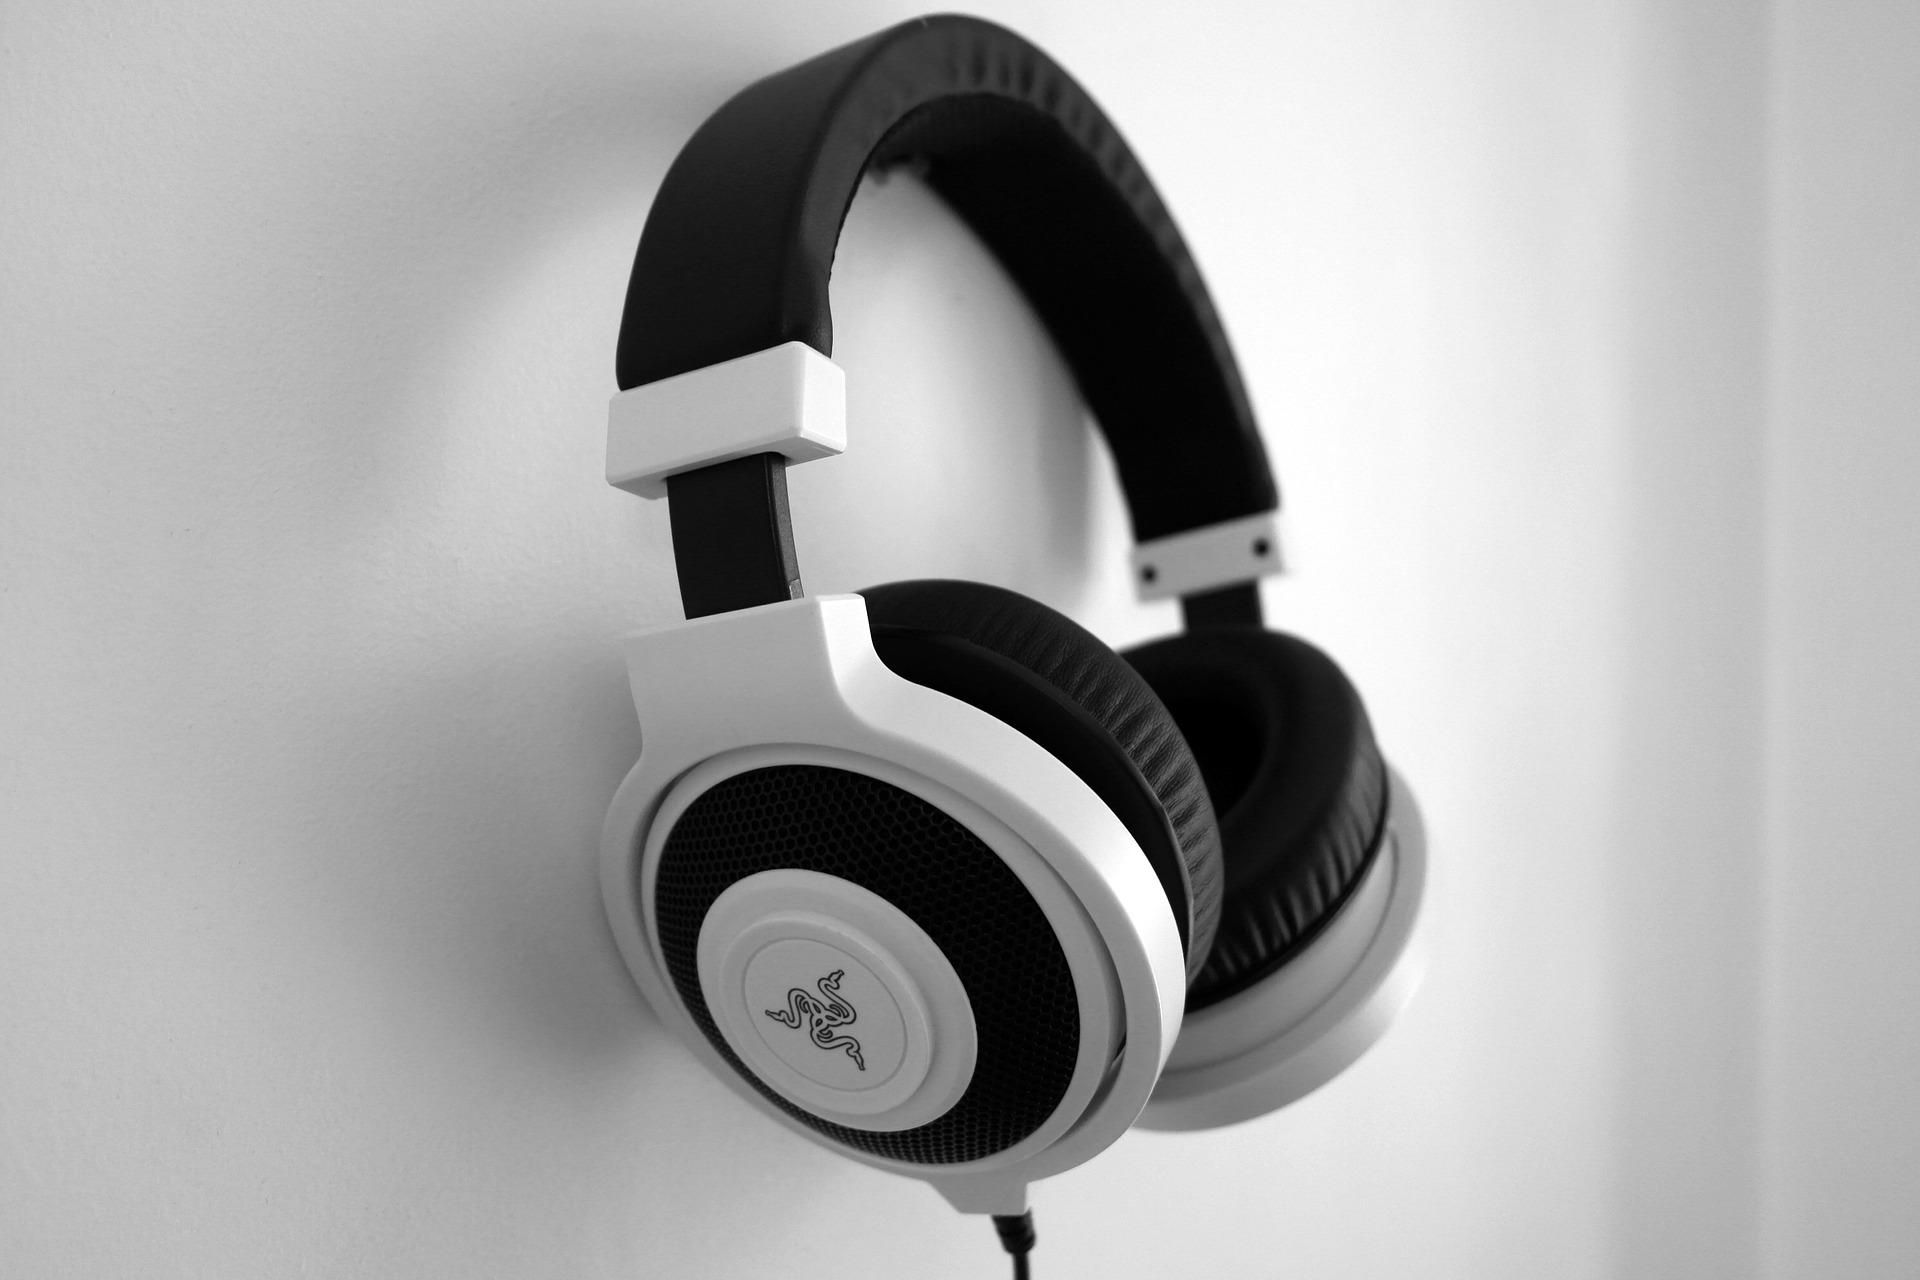 Image of white Razer headphones